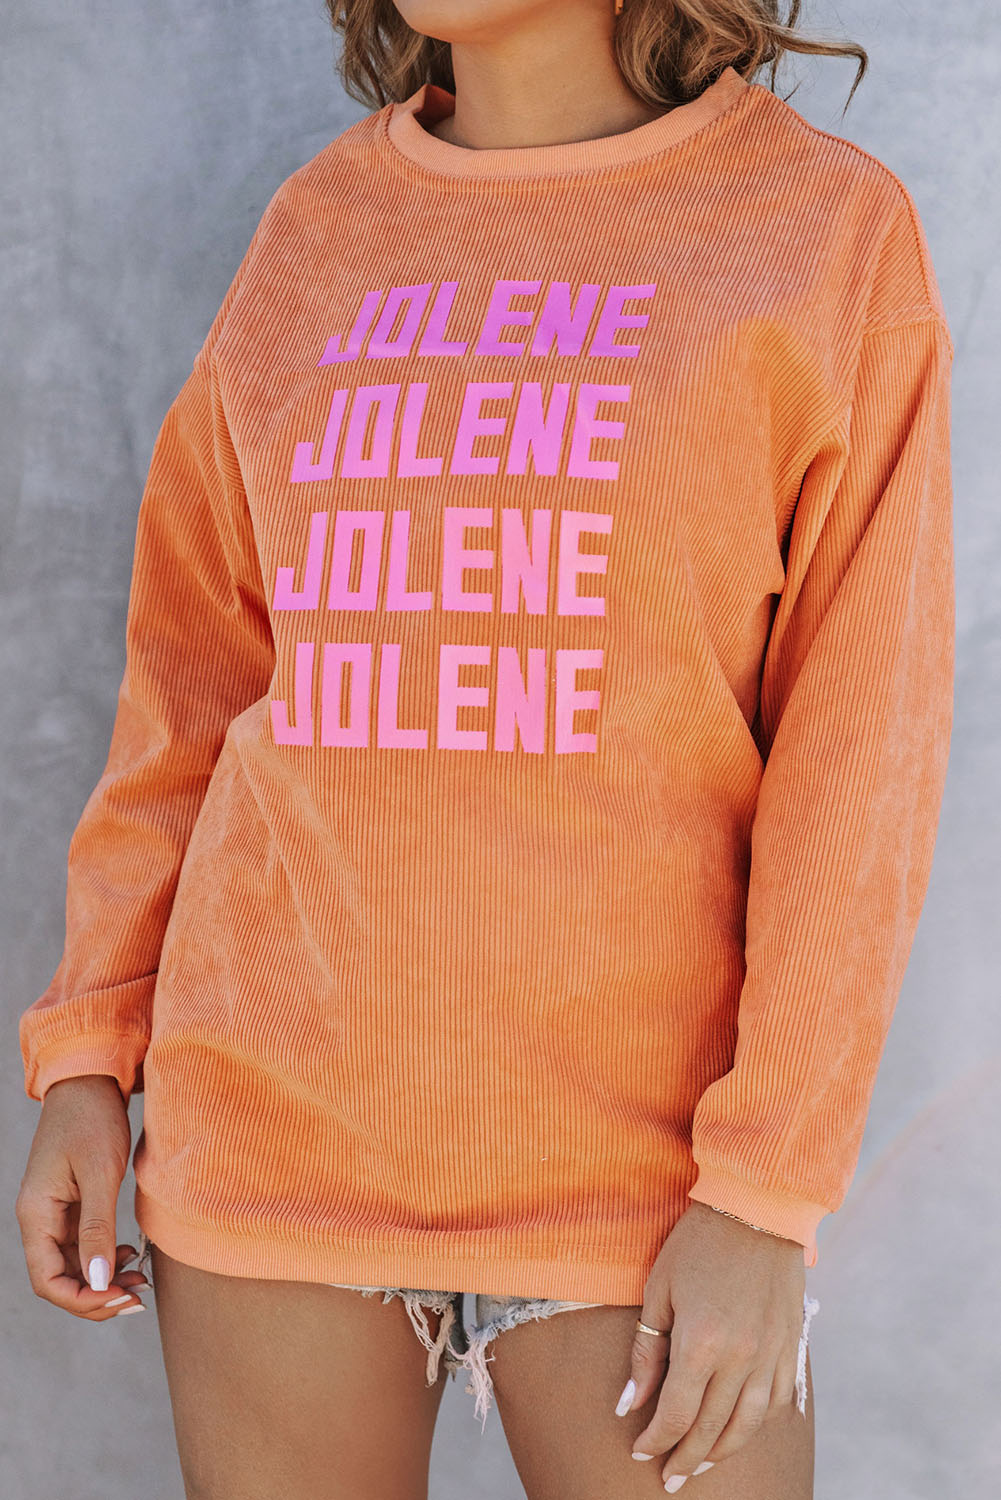 Jolene (sweatshirt)